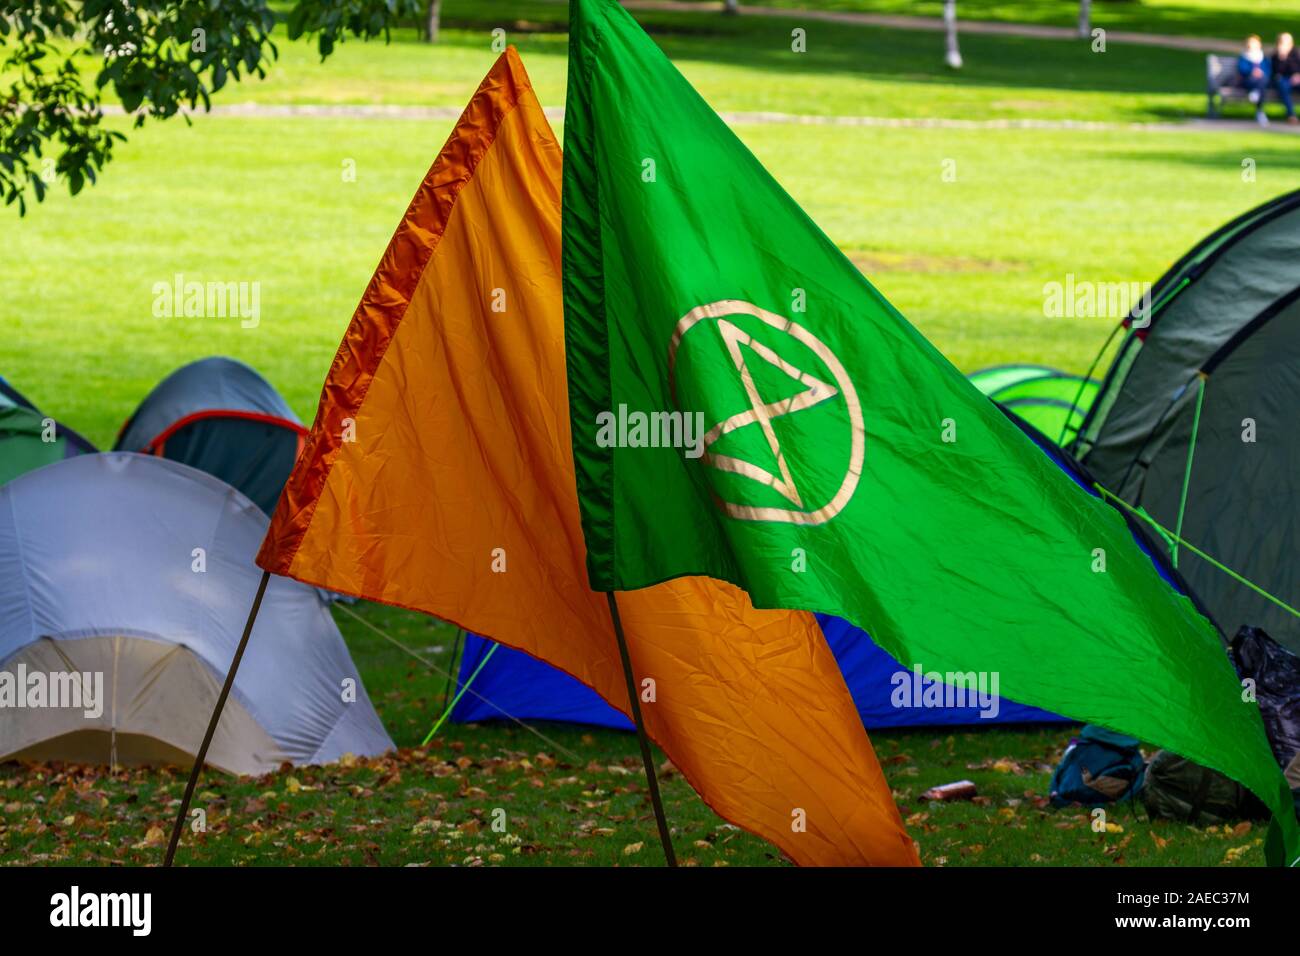 Extinción Rebelión de banderas verdes y naranjas con símbolo. Grupo de activismo para combatir el cambio climático y proteger el medio ambiente. Nadie. Dublín, Irlanda Foto de stock